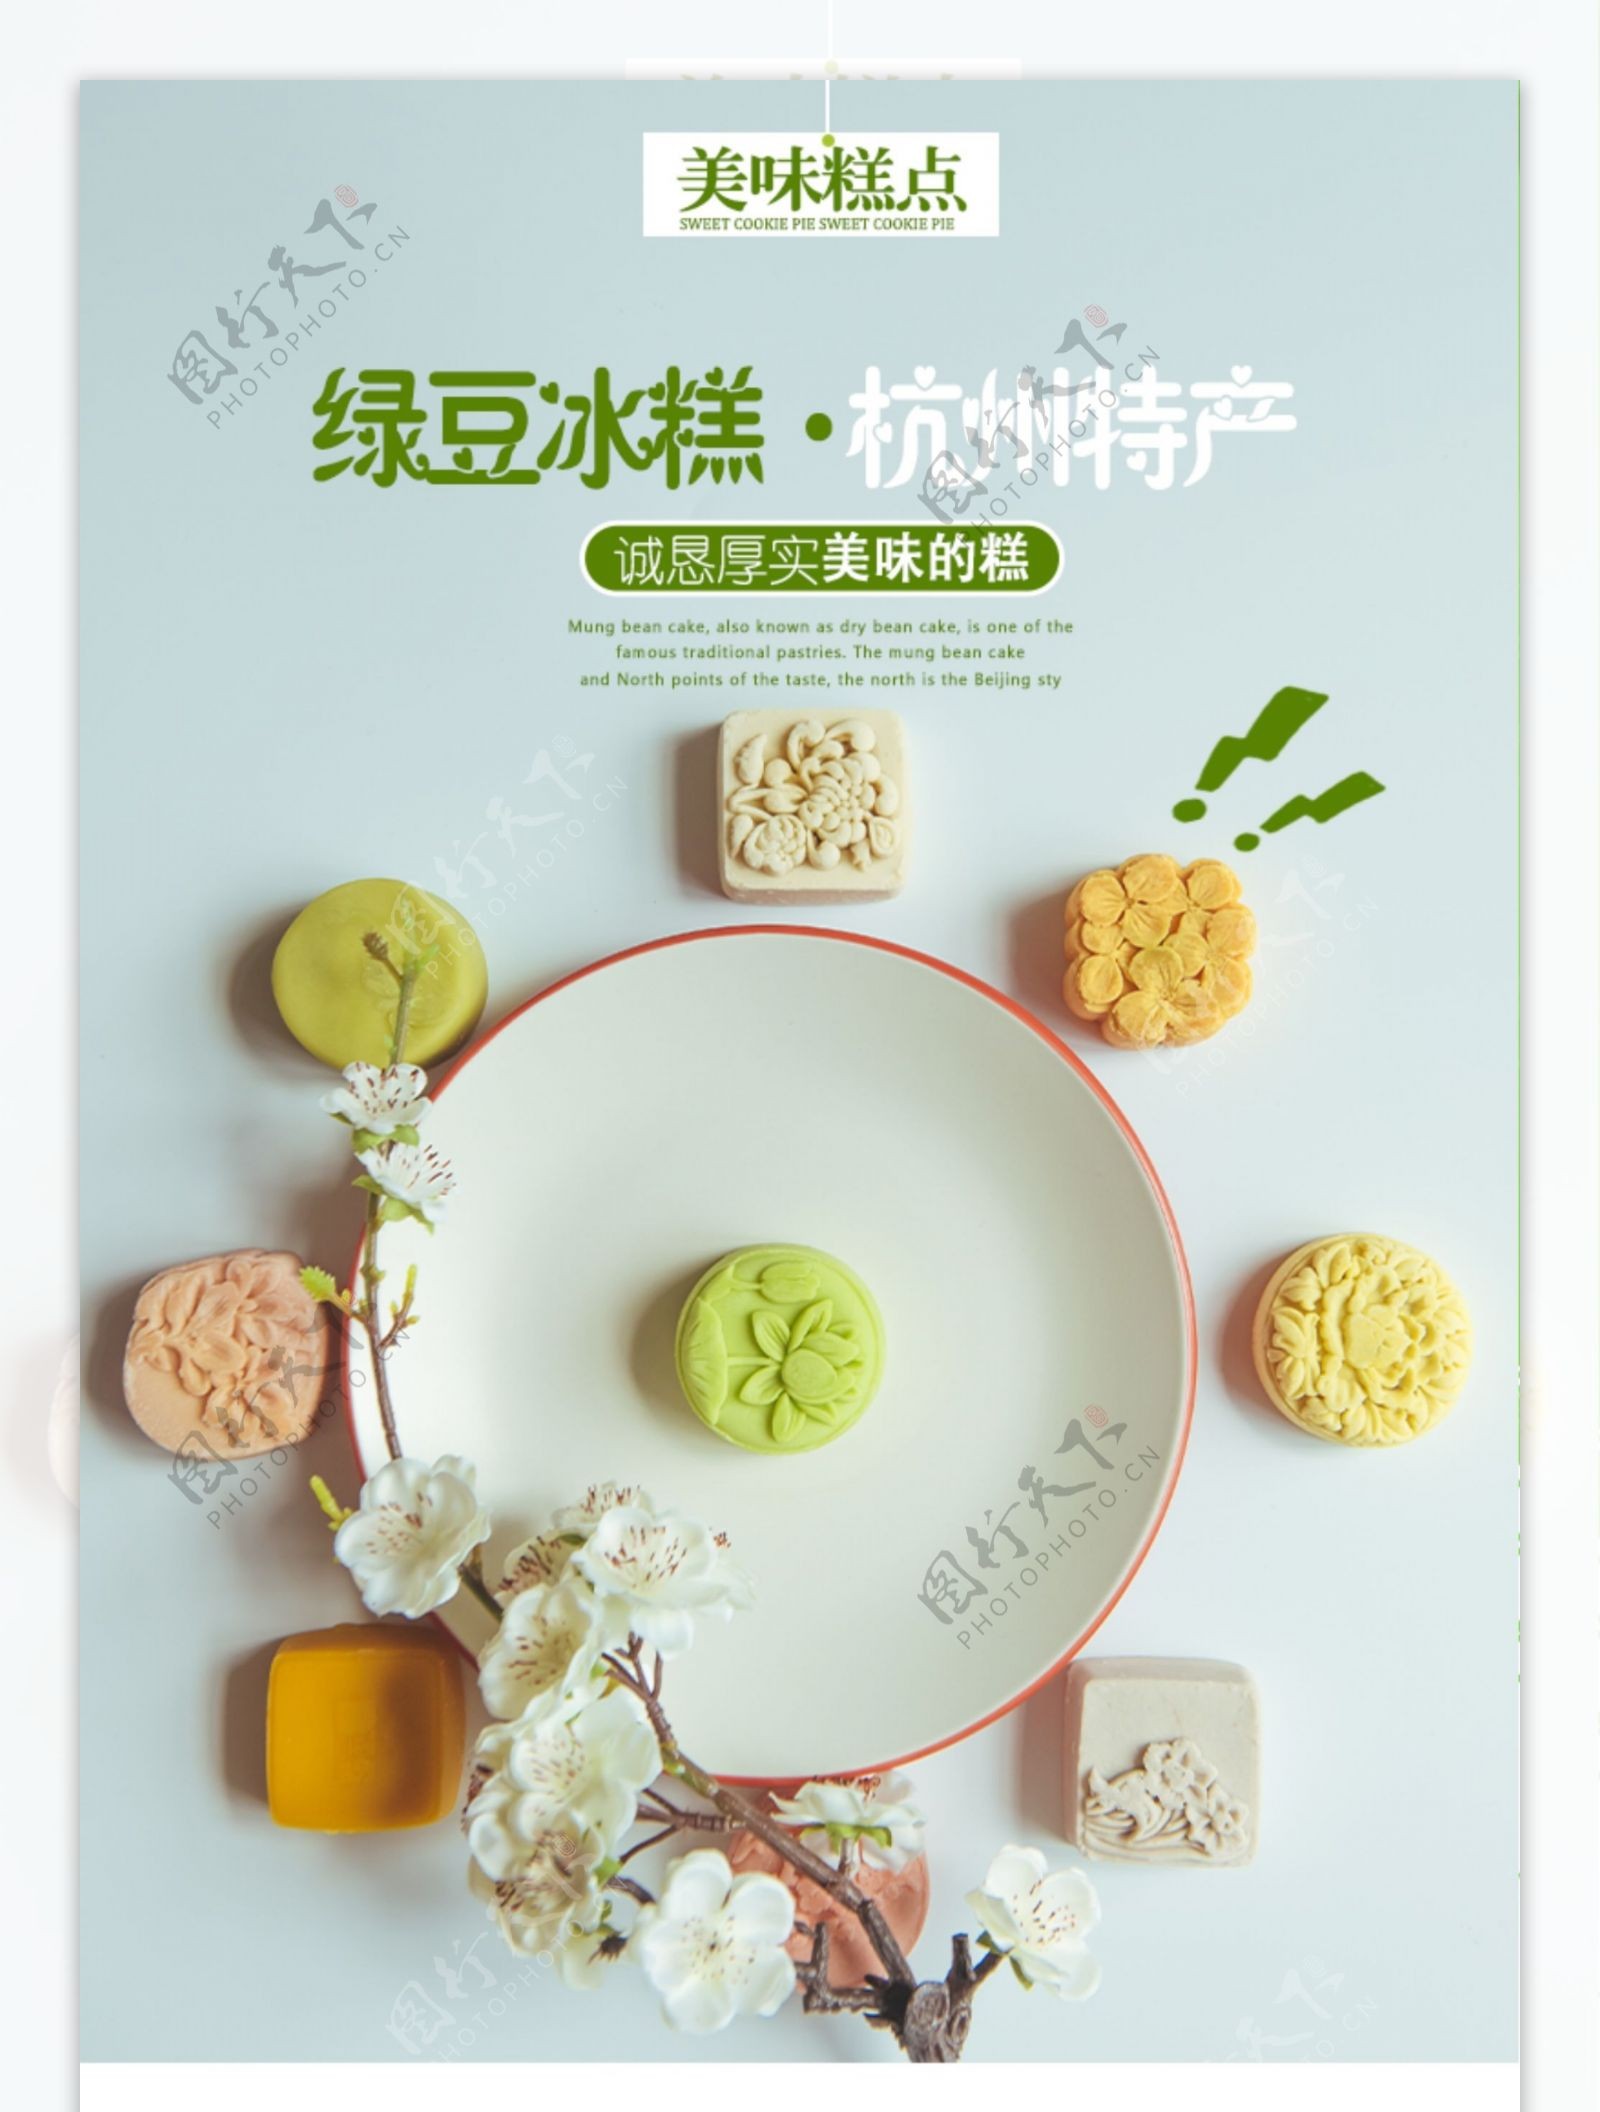 绿豆冰糕促销淘宝详情页